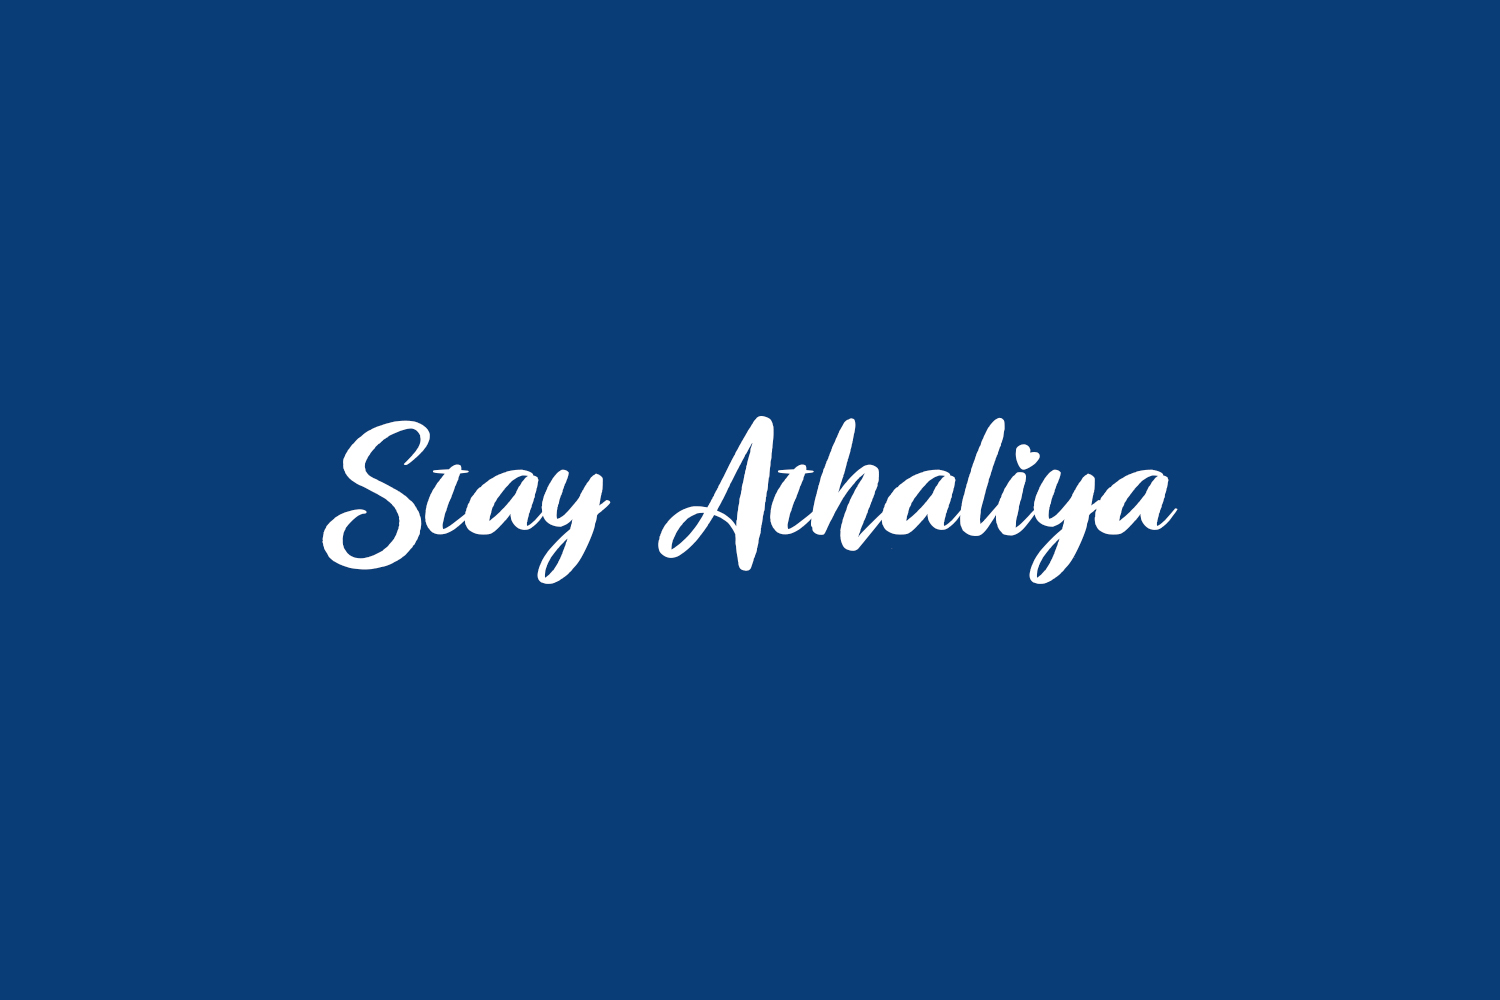 Stay Athaliya Free Font